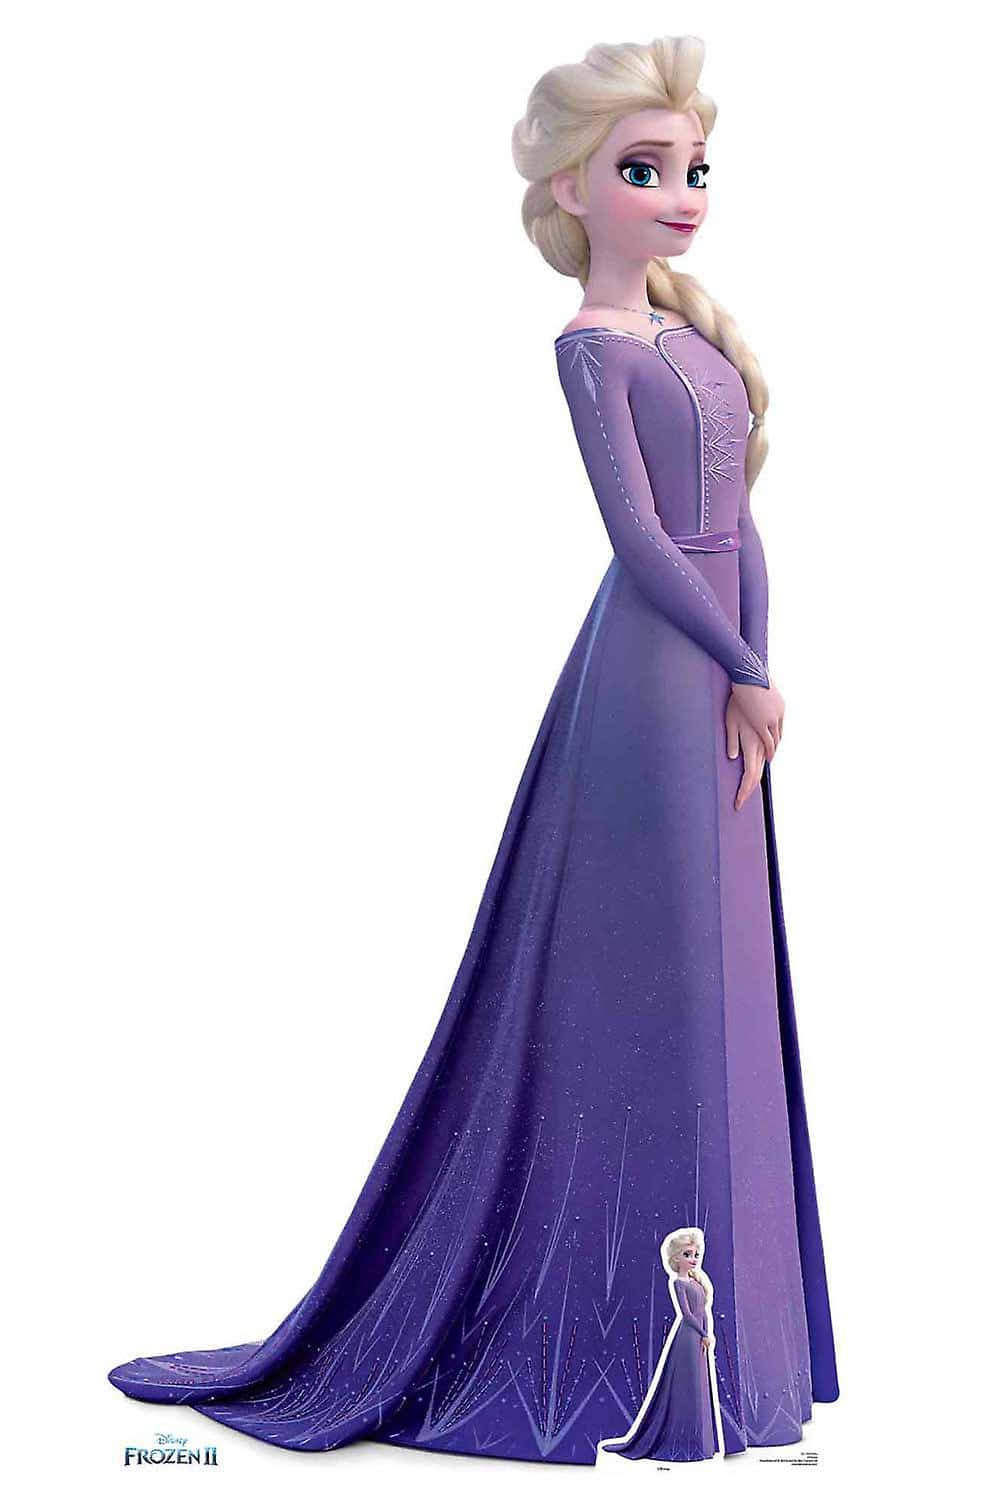 Immaginidi Elsa Frozen In Abito Viola